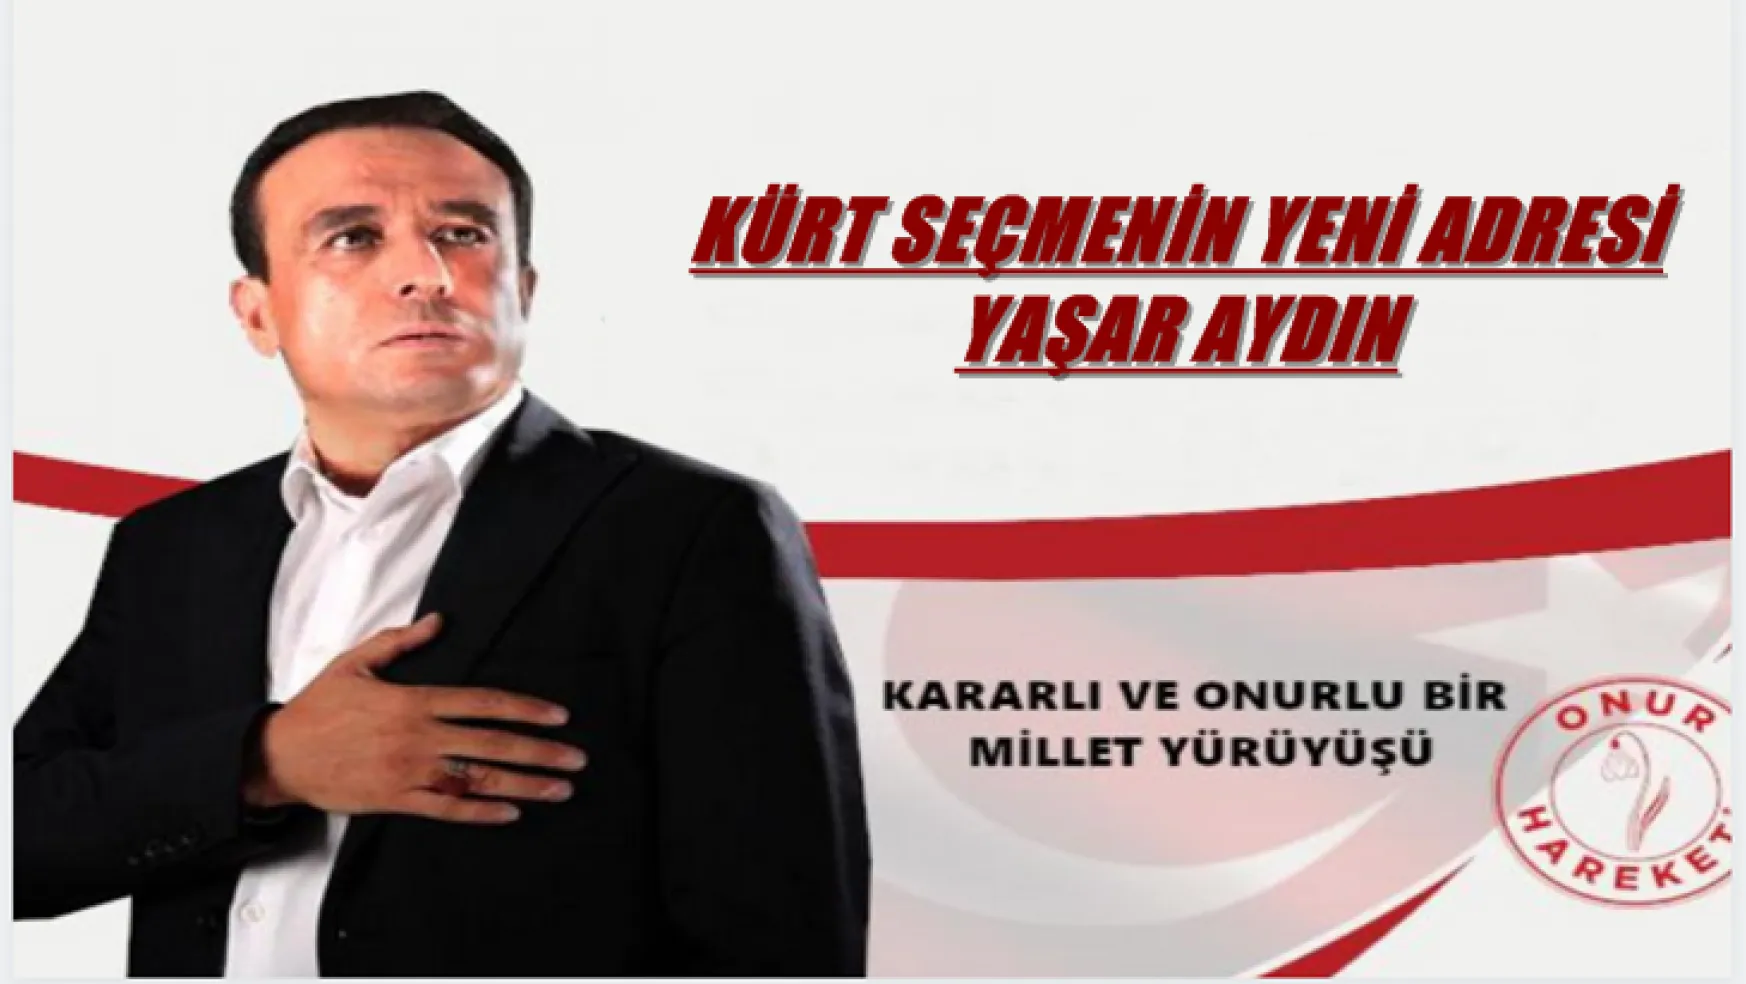 Yaşar Aydın'ın ezber bozan Kürt vatandaşlarla ilgili yaptığı açıklama!